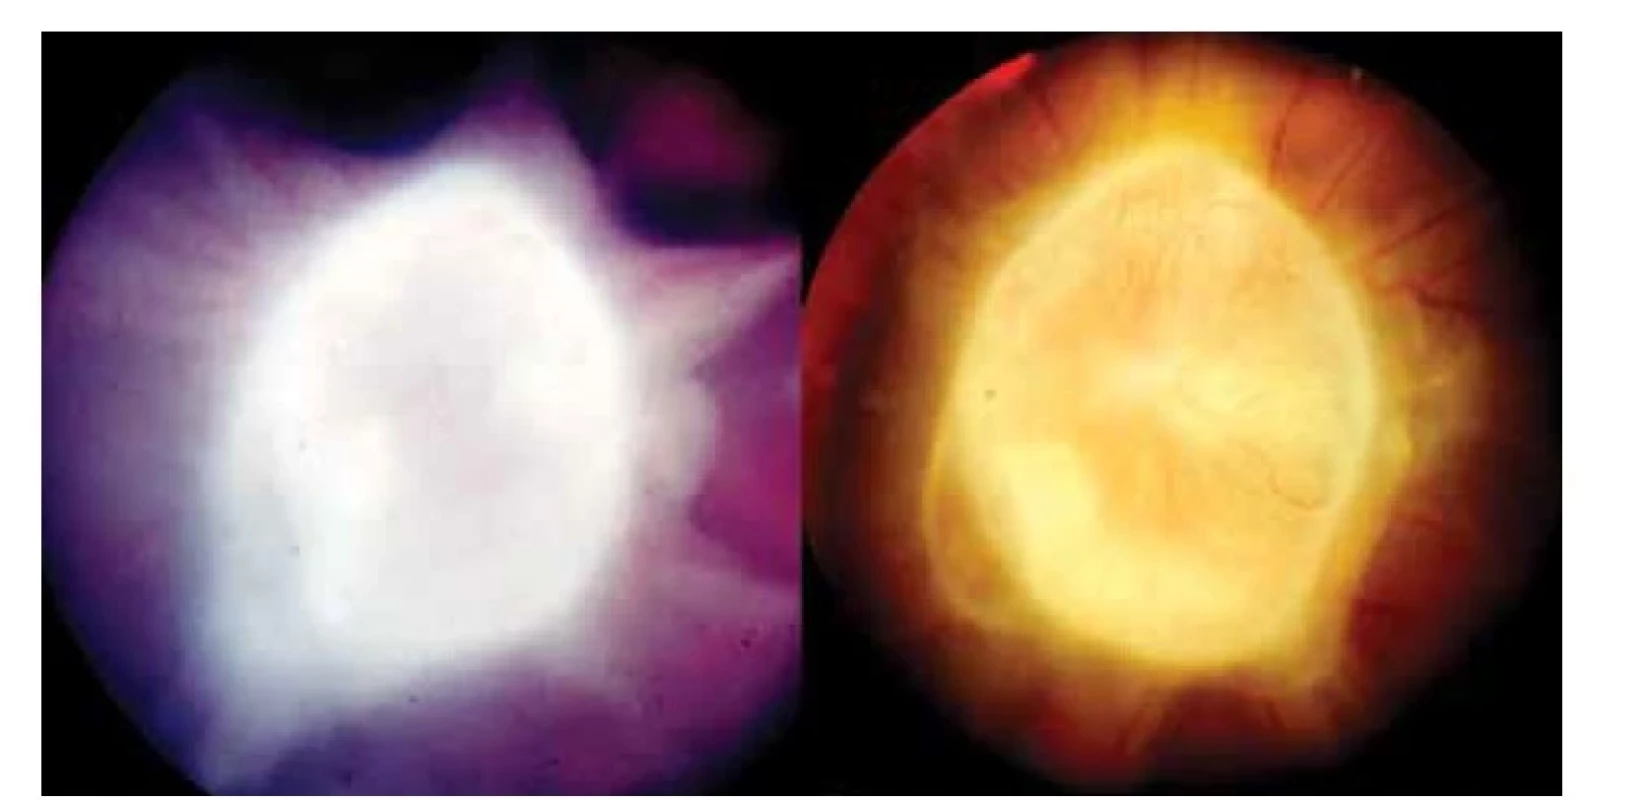 Vlevo: Cystický granulom hlavy zrakového nervu toxokarové etiologie s vitreálními
pruhy před celkovou terapií<br>
Vpravo: Cystický granulom hlavy zrakového nervu toxokarové etiologie s  kapilárami na
jeho povrchu půl roku po kombinované léčbě